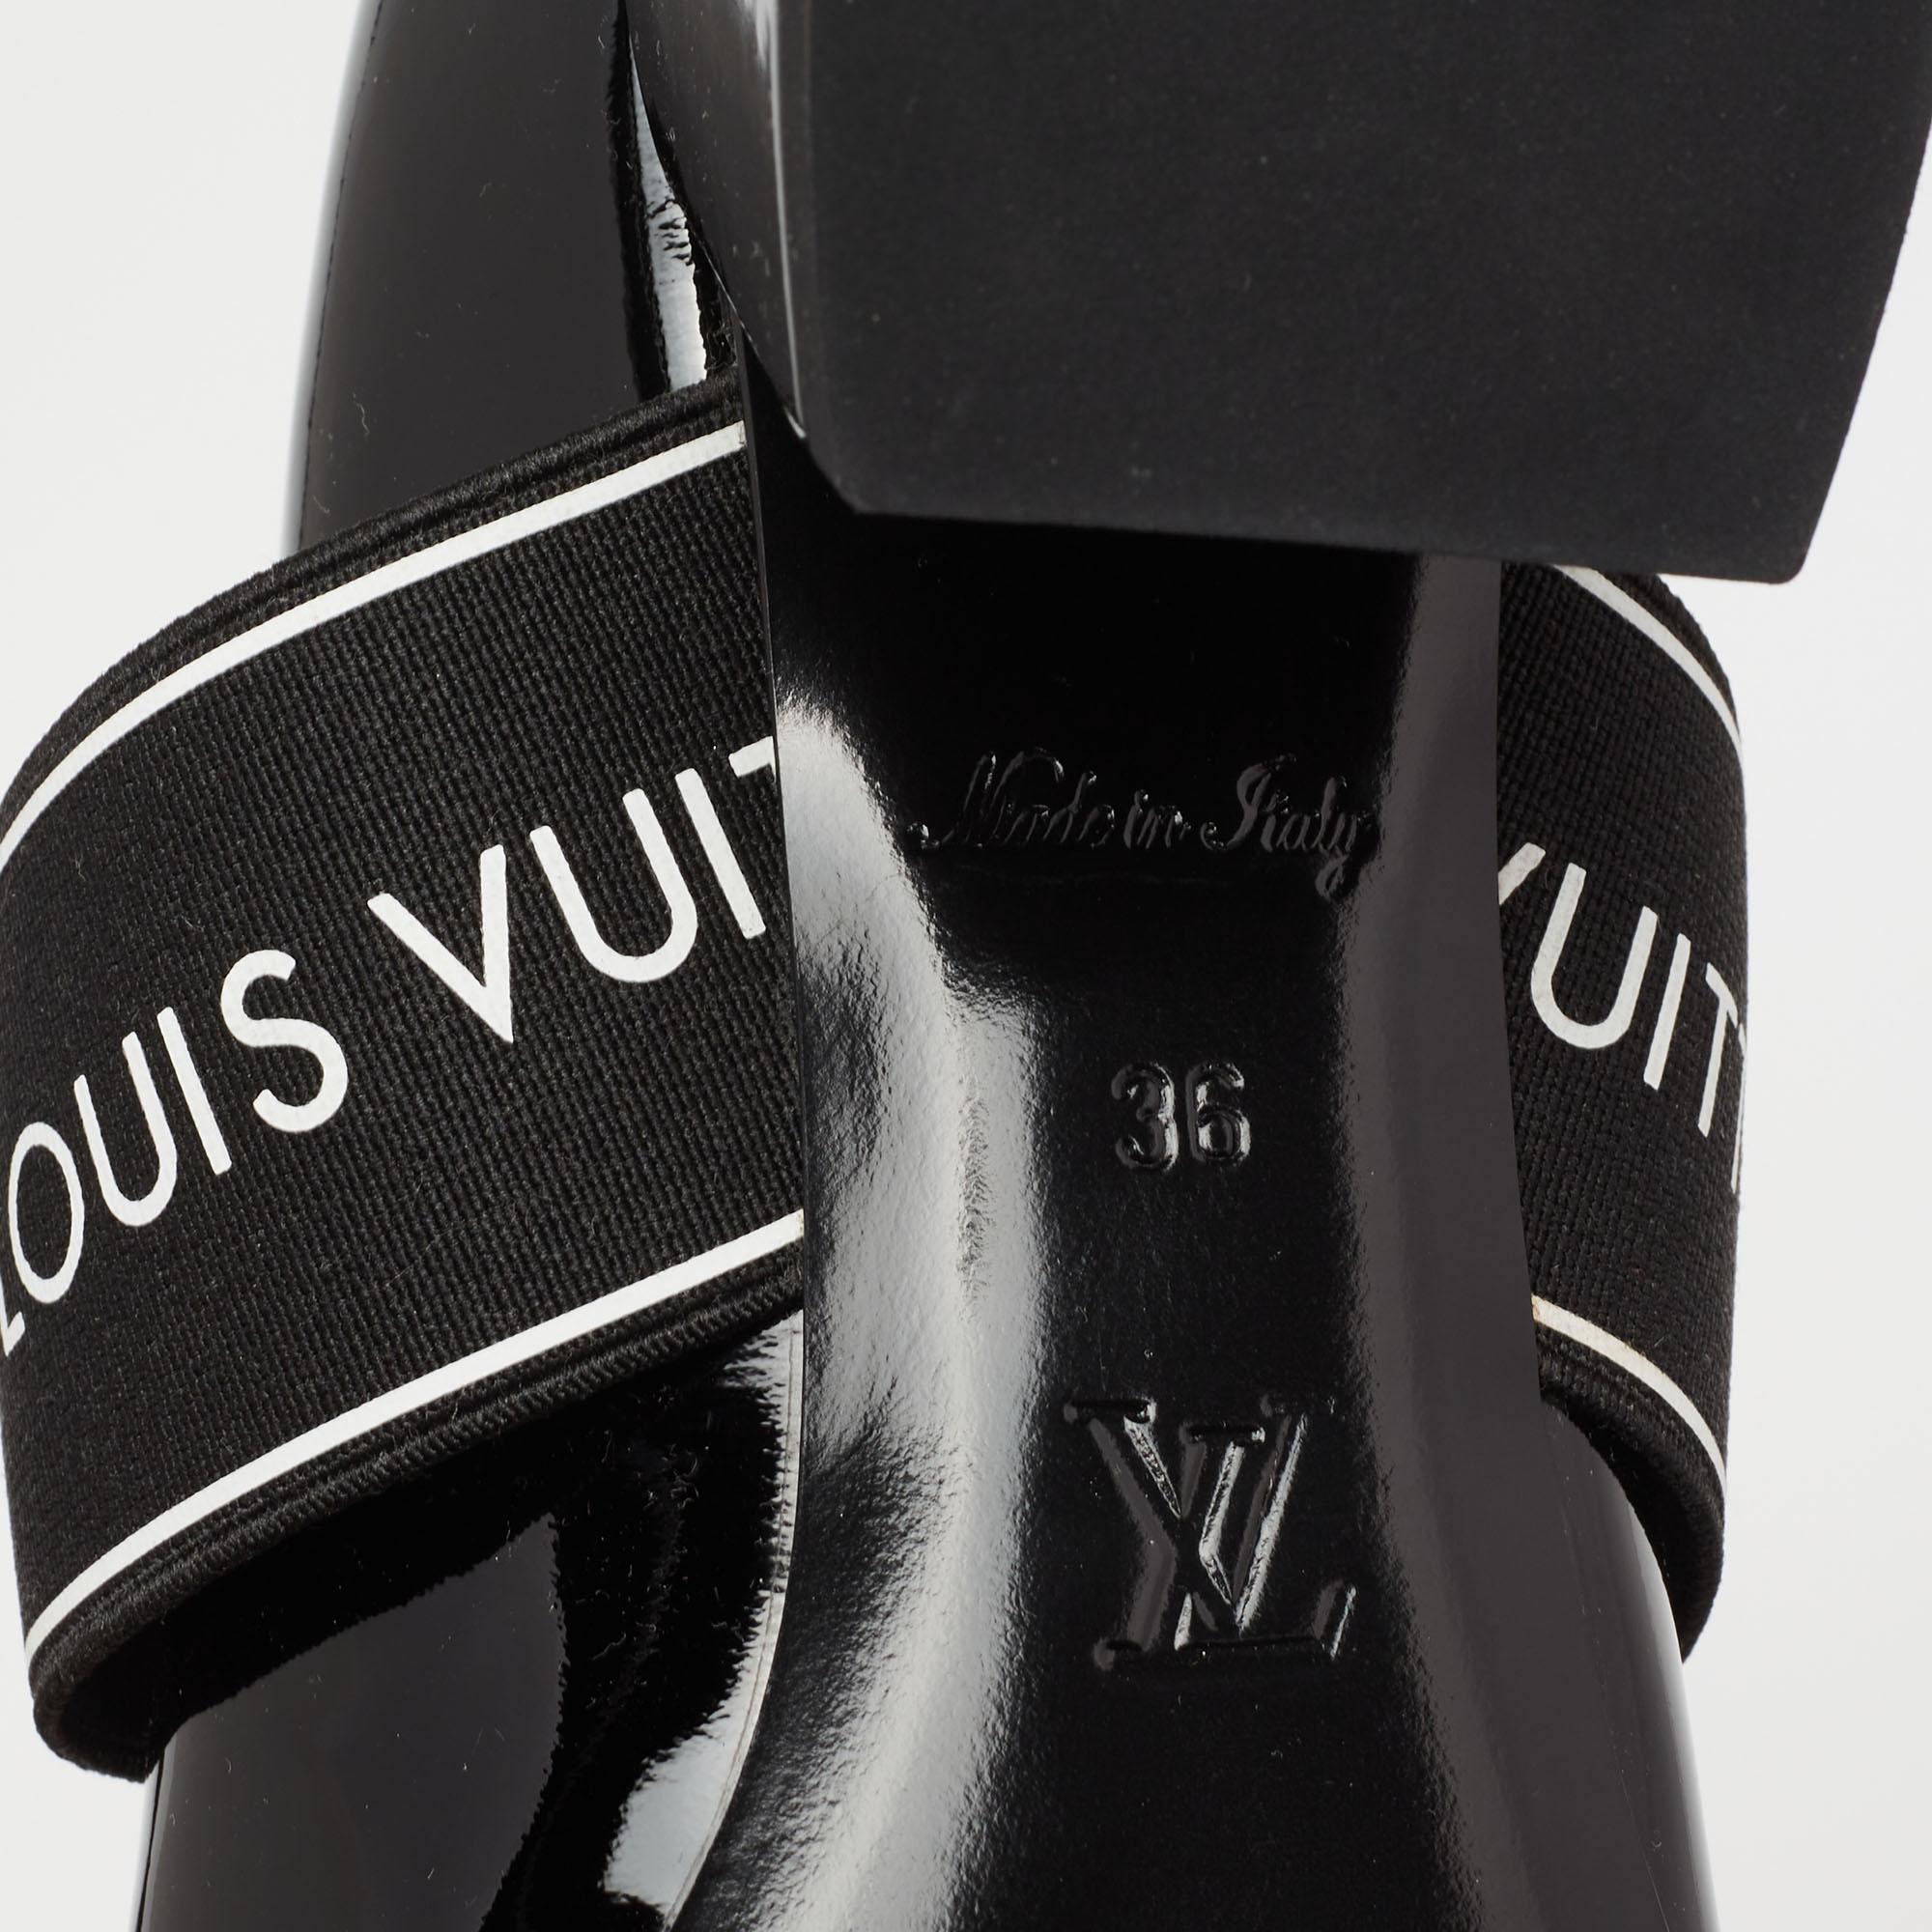 Louis Vuitton Black Patent Leather Uncover Pumps Size 36 2